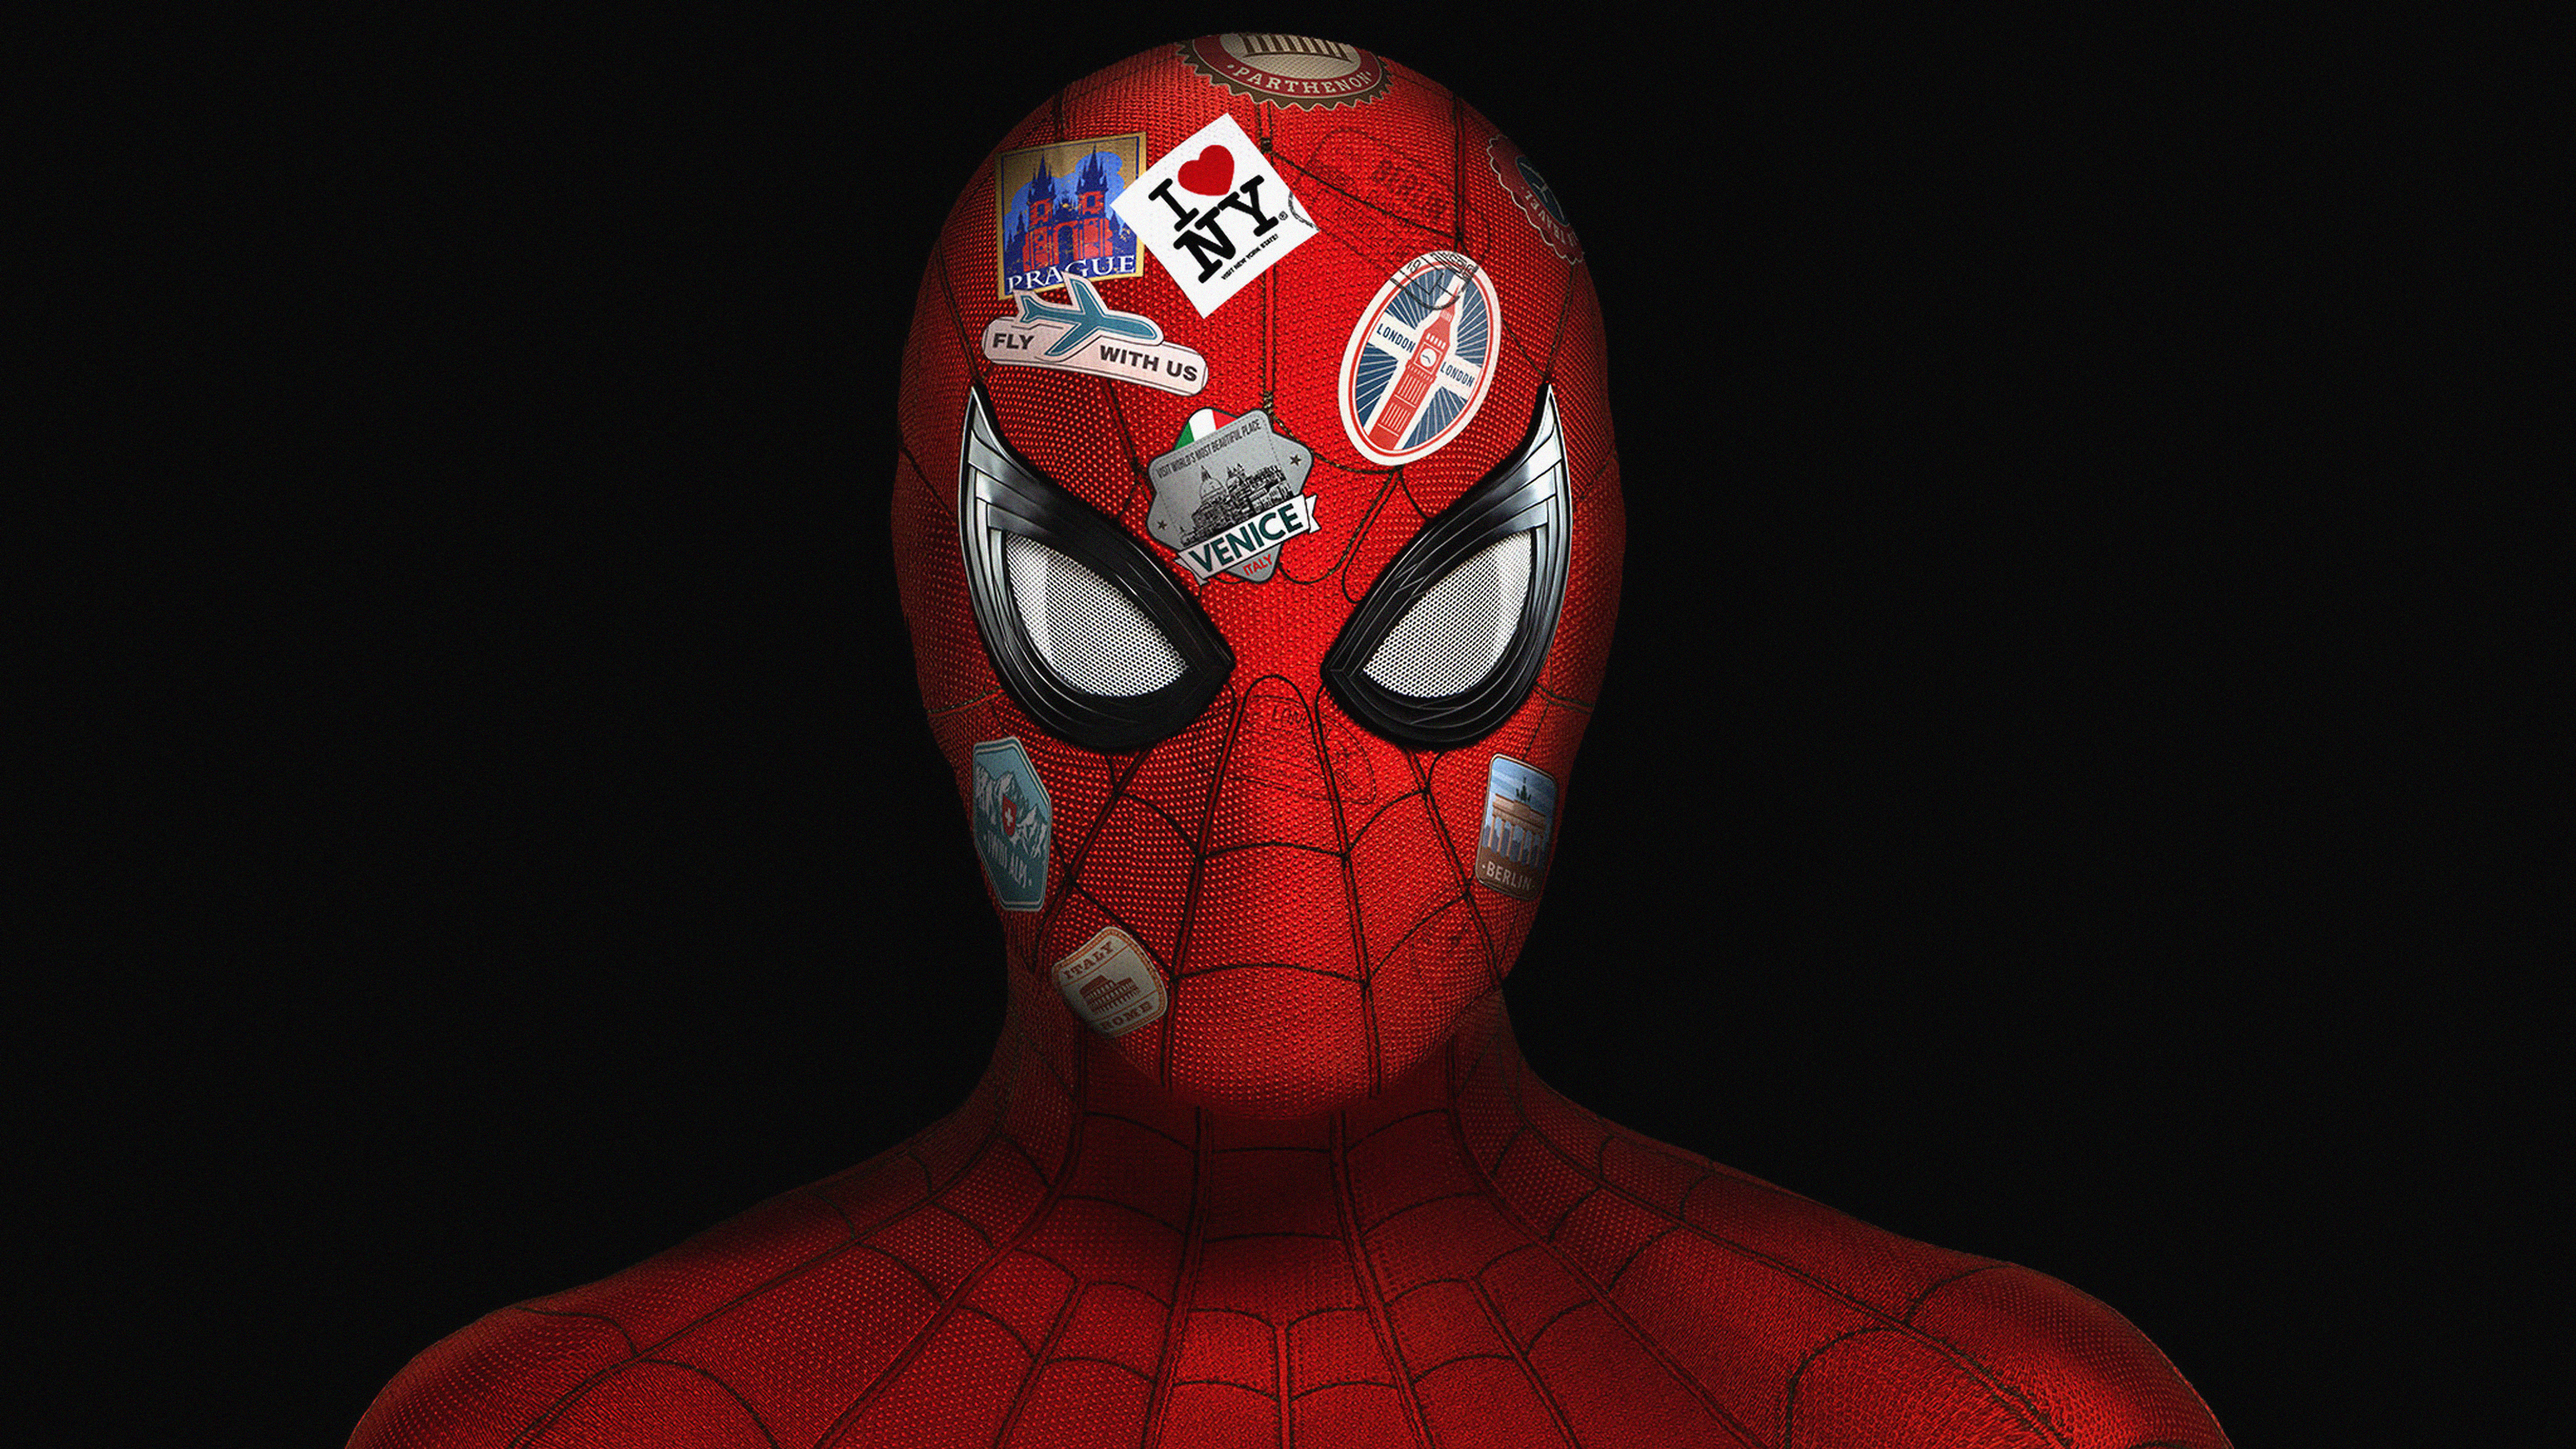 Spider-Man Far From Home Fan Keyart Wallpapers